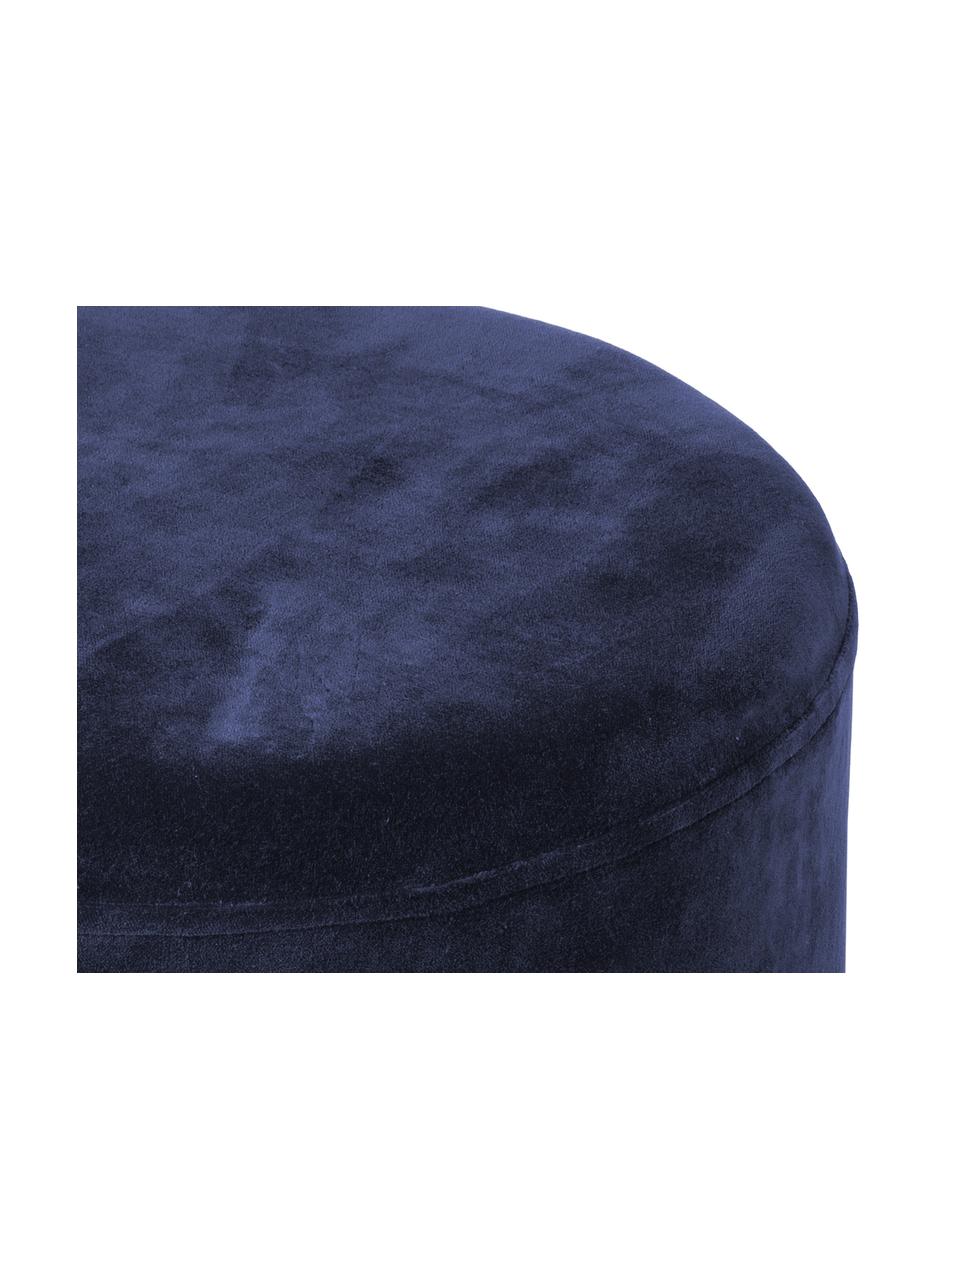 Puf de terciopelo Harlow, Tapizado: terciopelo de algodón, Azul marino, dorado, Ø 38 x Al 42 cm